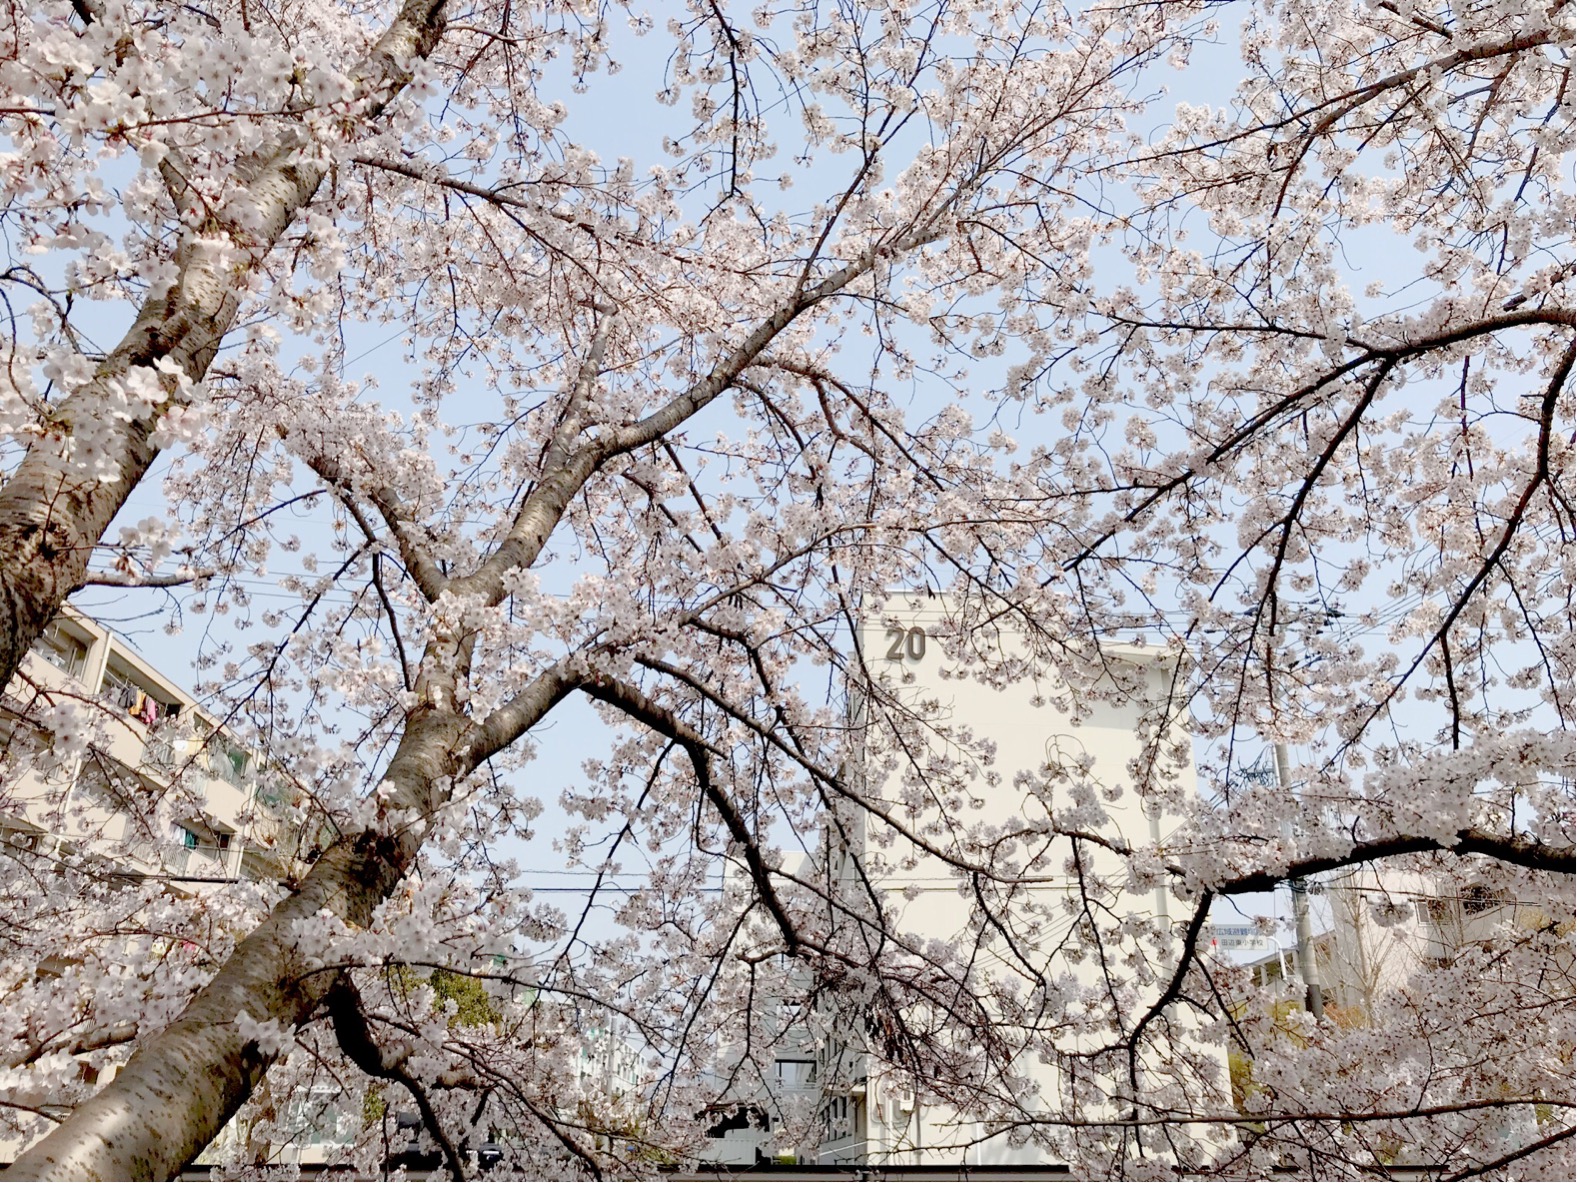 馬坂川の桜